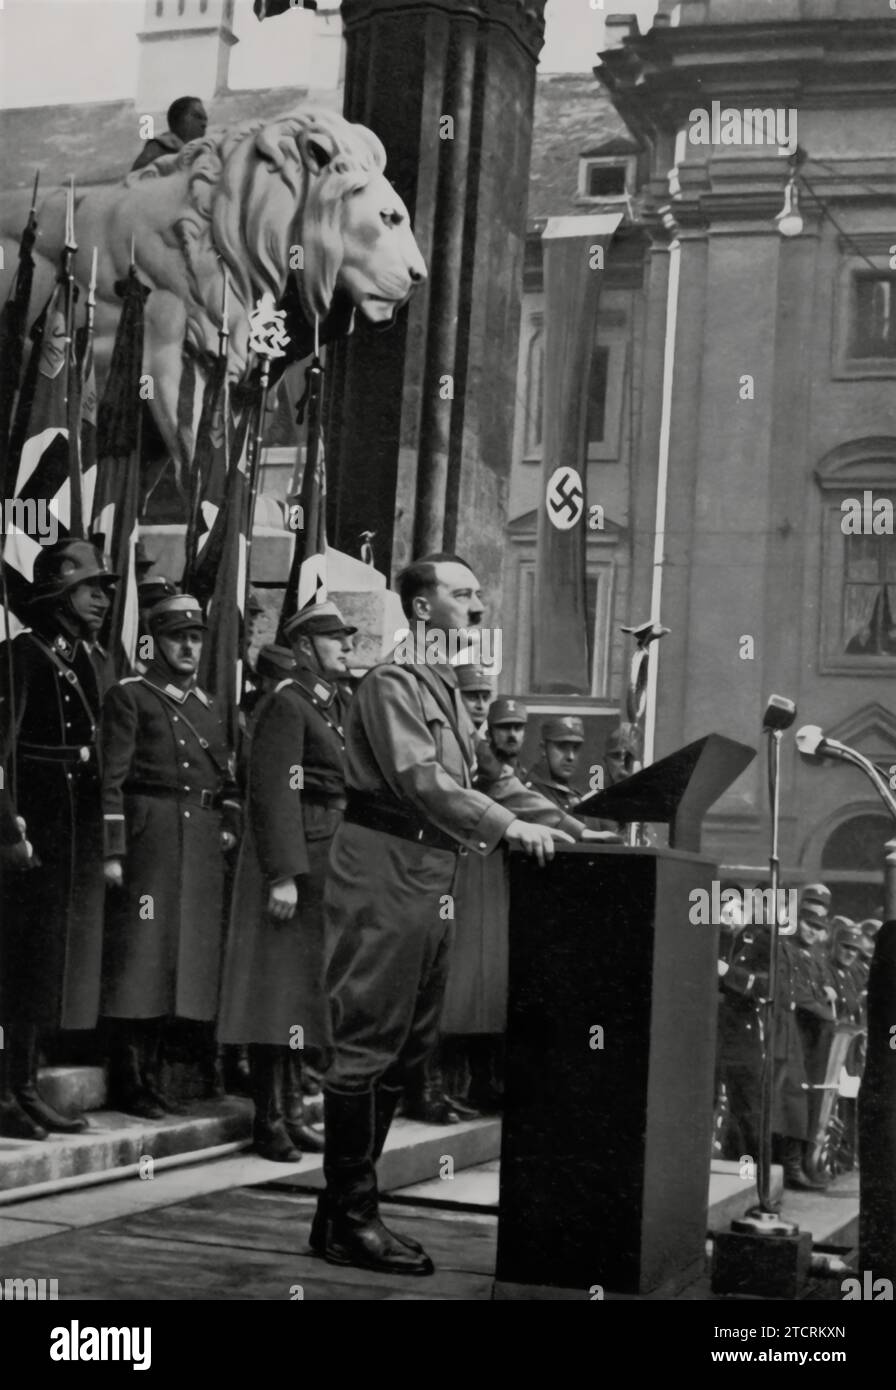 Nel novembre 1934 a Monaco, Adolf Hitler viene catturato parlando davanti alla Feldherrnhalle ai nuovi membri della Gioventù Hitler e della Lega delle ragazze tedesche. Questo evento segnò un momento significativo, in quanto Hitler si rivolse alla generazione più giovane che veniva introdotta in queste organizzazioni naziste. La Feldherrnhalle, una posizione simbolica a Monaco, ha fornito uno sfondo storicamente risonante per questa occasione. Foto Stock